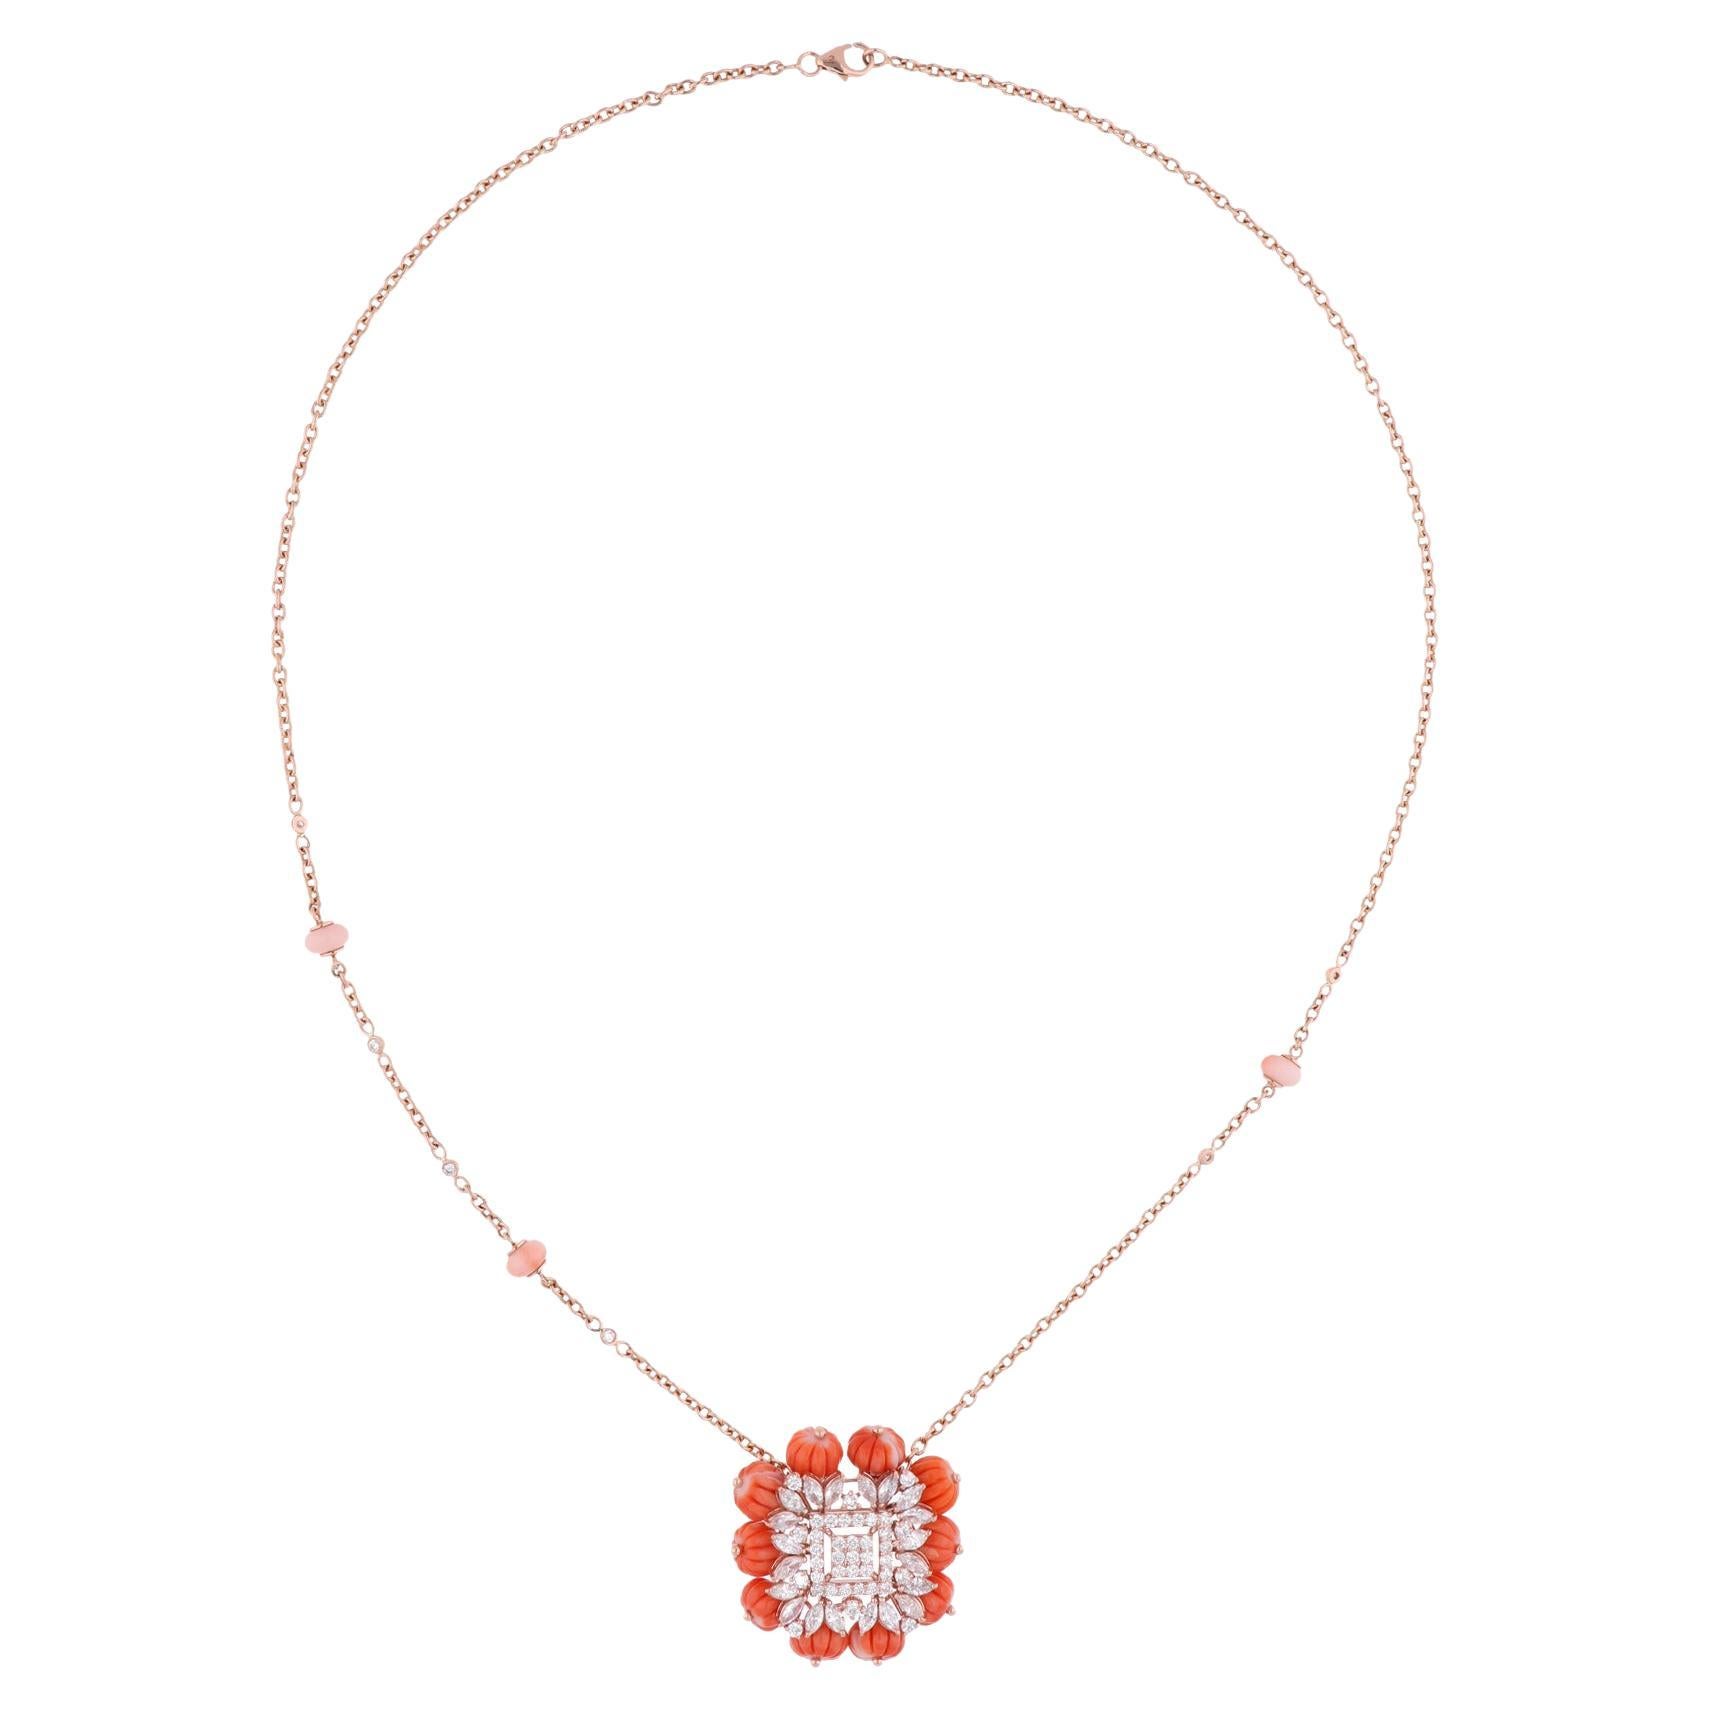 Coral Beads Edelstein Charm Anhänger Halskette Diamant 18 Karat Rose Gold Schmuck